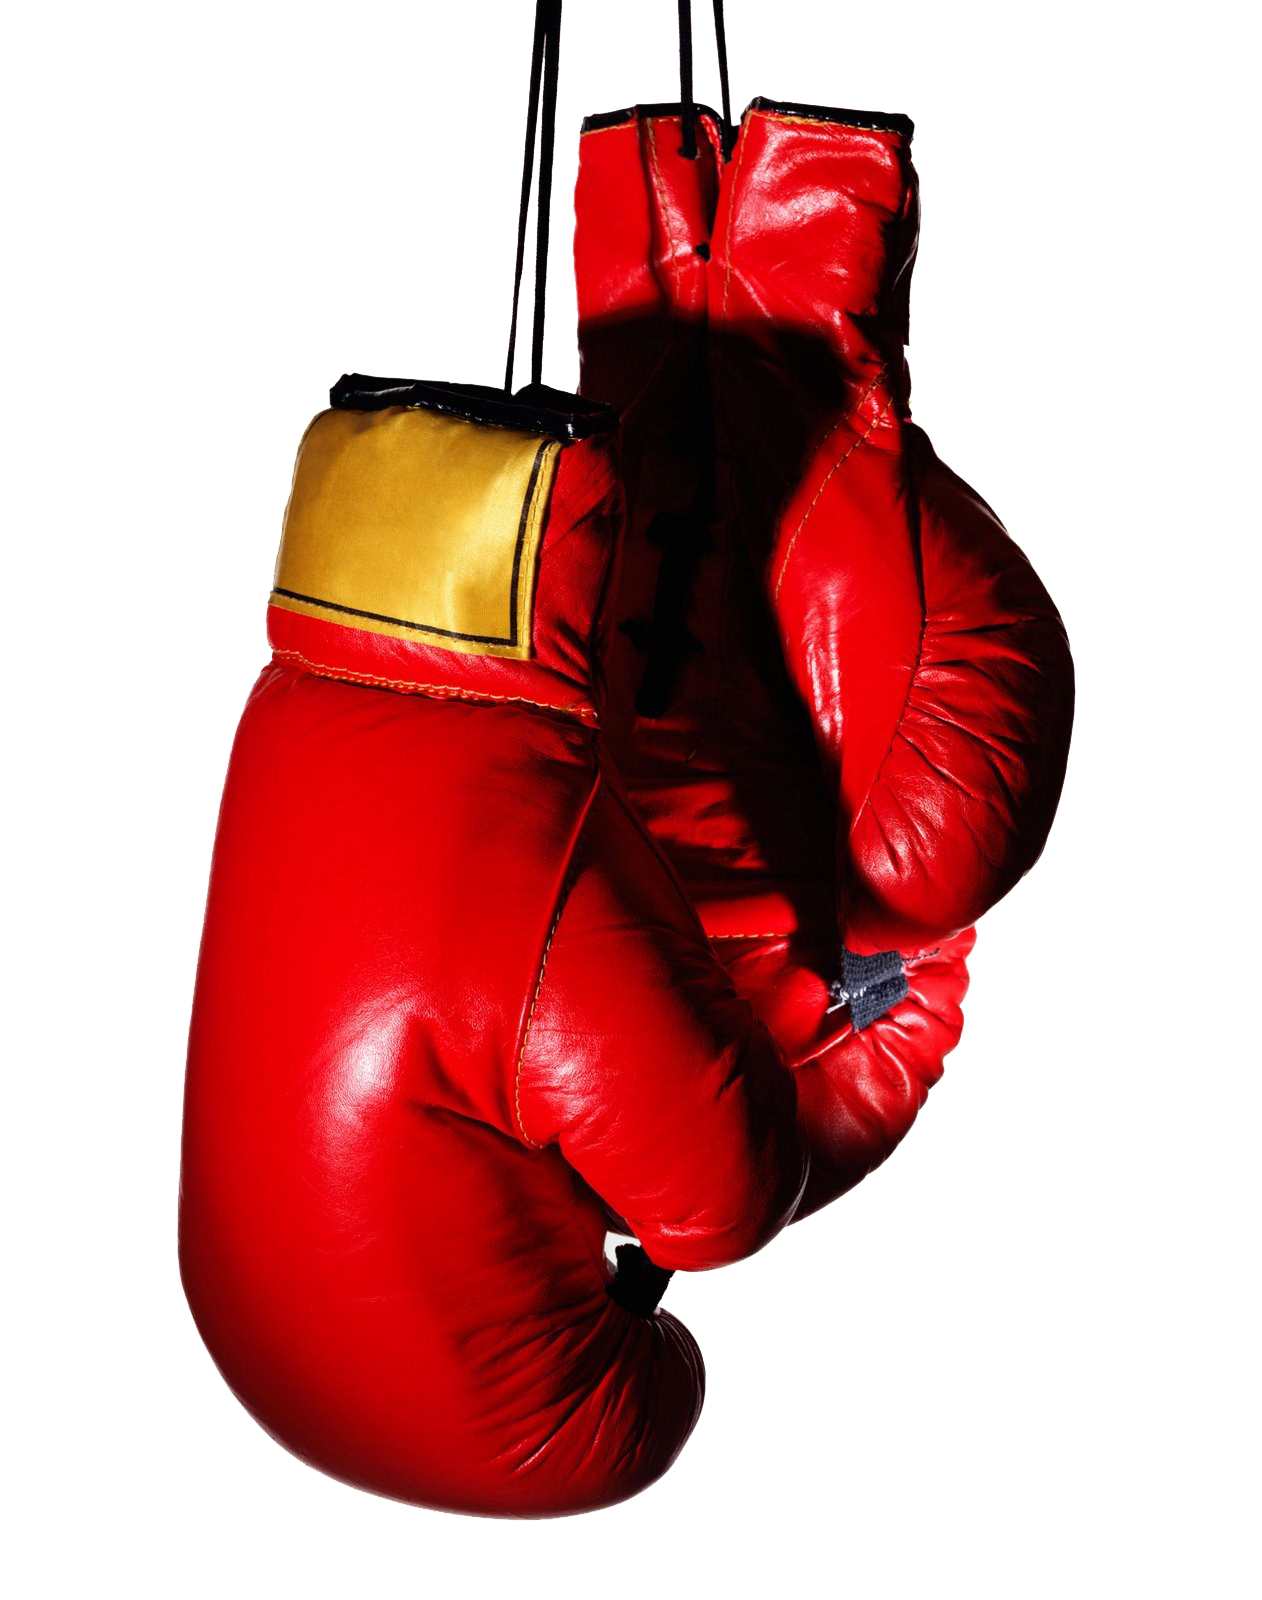 Download PNG image - Boxing Gloves PNG Transparent Image 